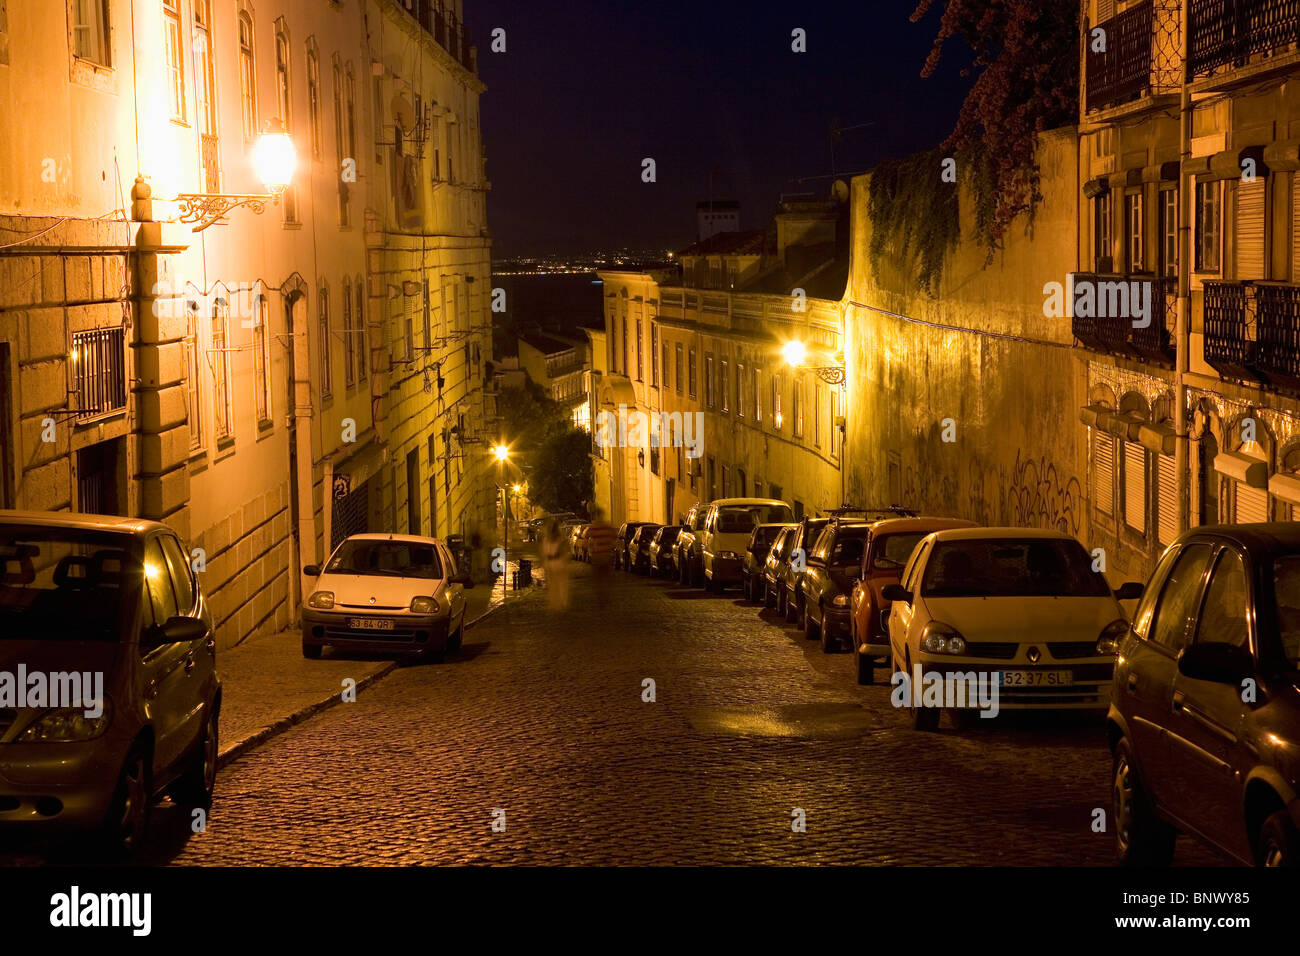 Eine typische Szene des geparkten Autos in der Nacht auf Kopfsteinpflaster in der Alfama Viertel von Lissabon, Portugal. Stockfoto